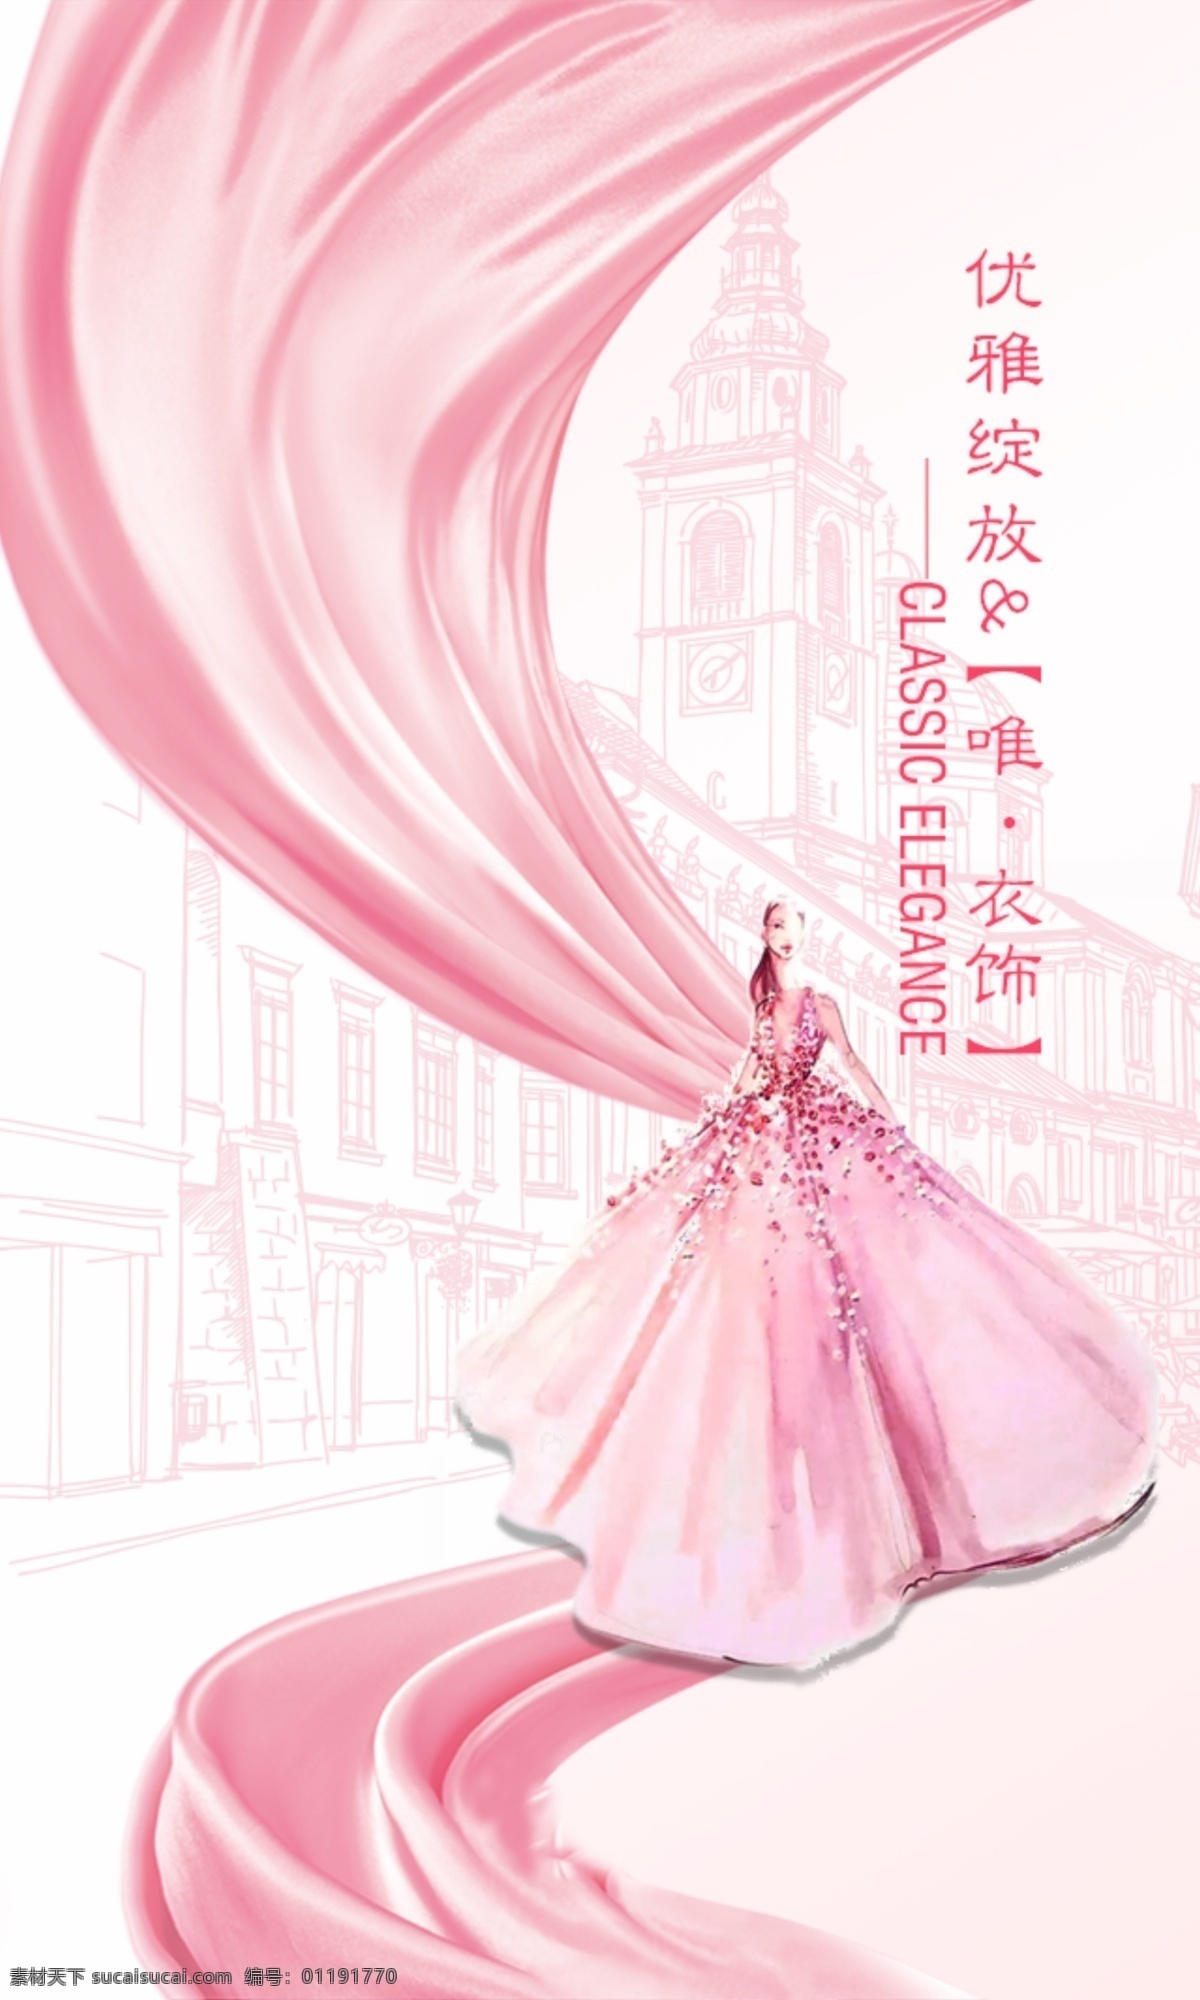 粉红背景 手机背景 礼服模特 手绘晚礼服 欧式建筑 丝绸 丝绸路 丝滑